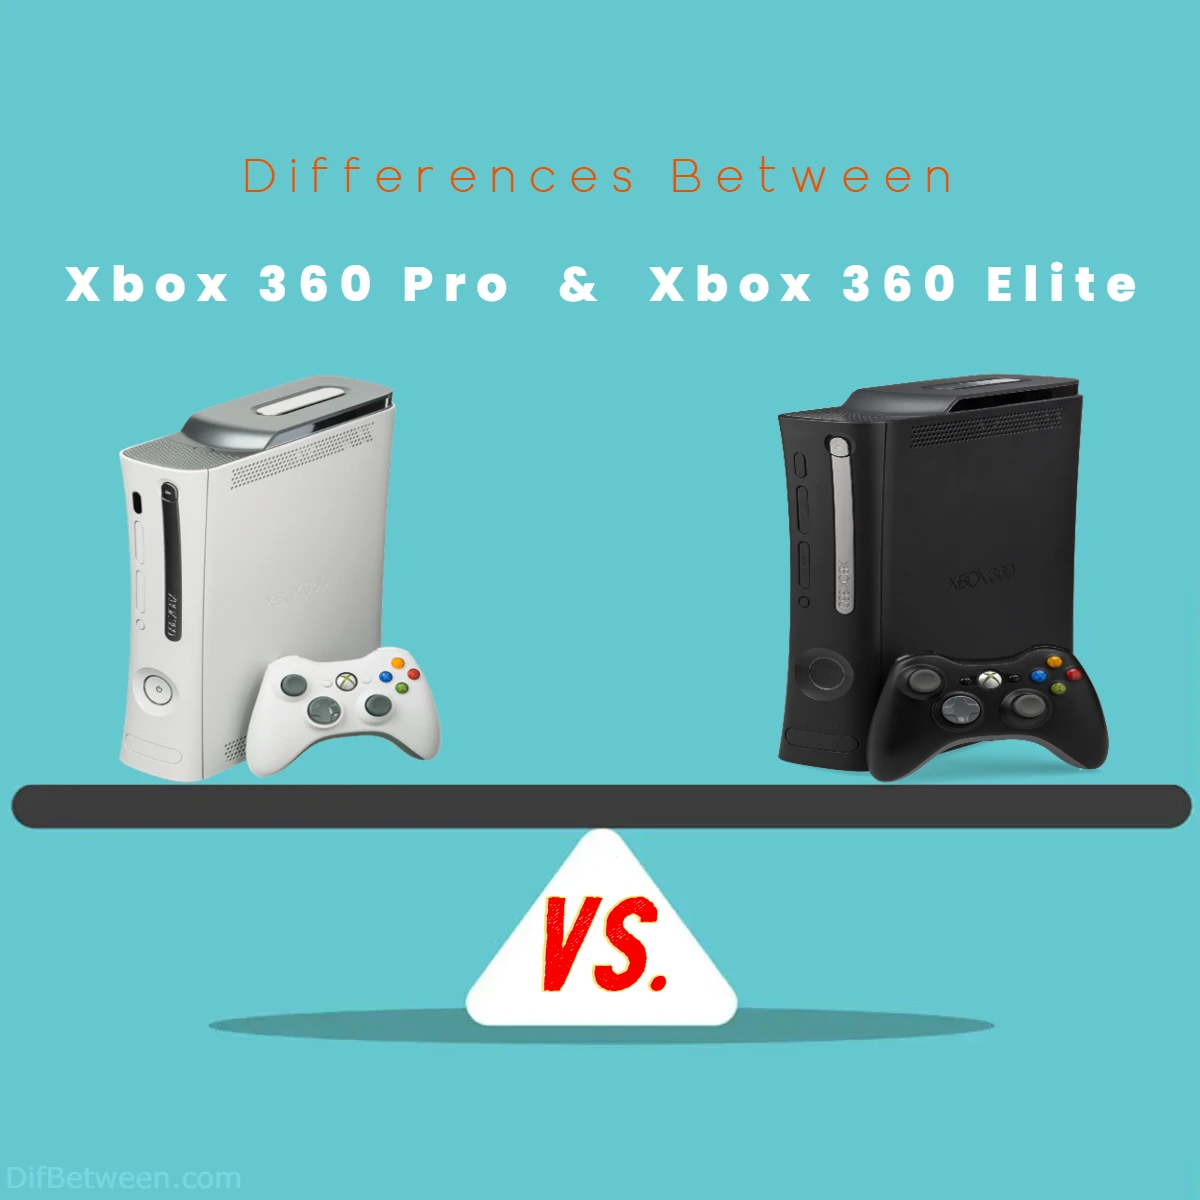 Differences Between Xbox 360 Pro vs Xbox 360 Elite